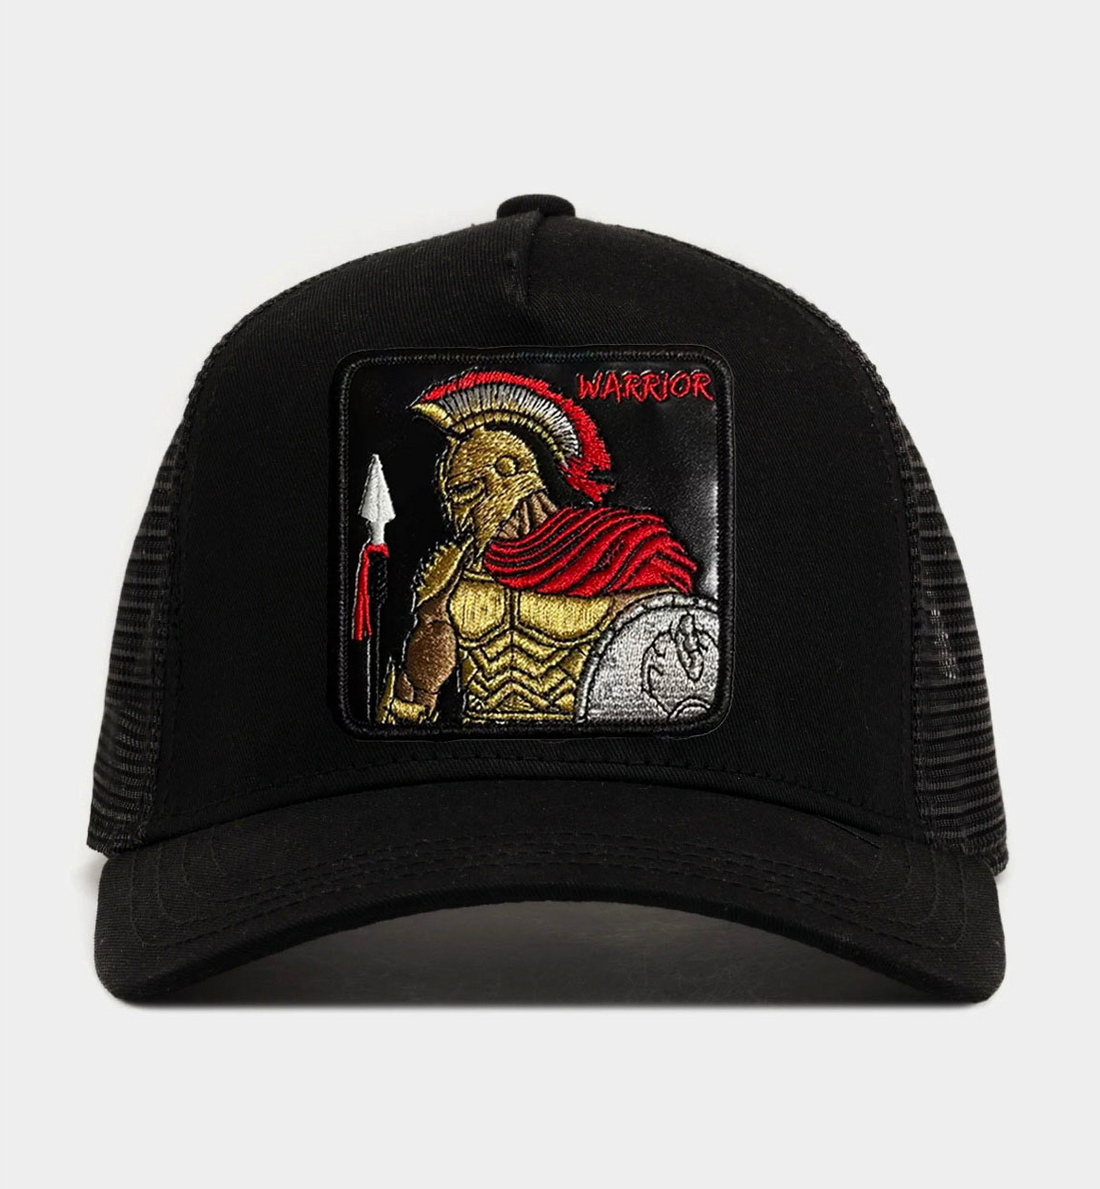 Spartan - "Warrior" Trucker Hat